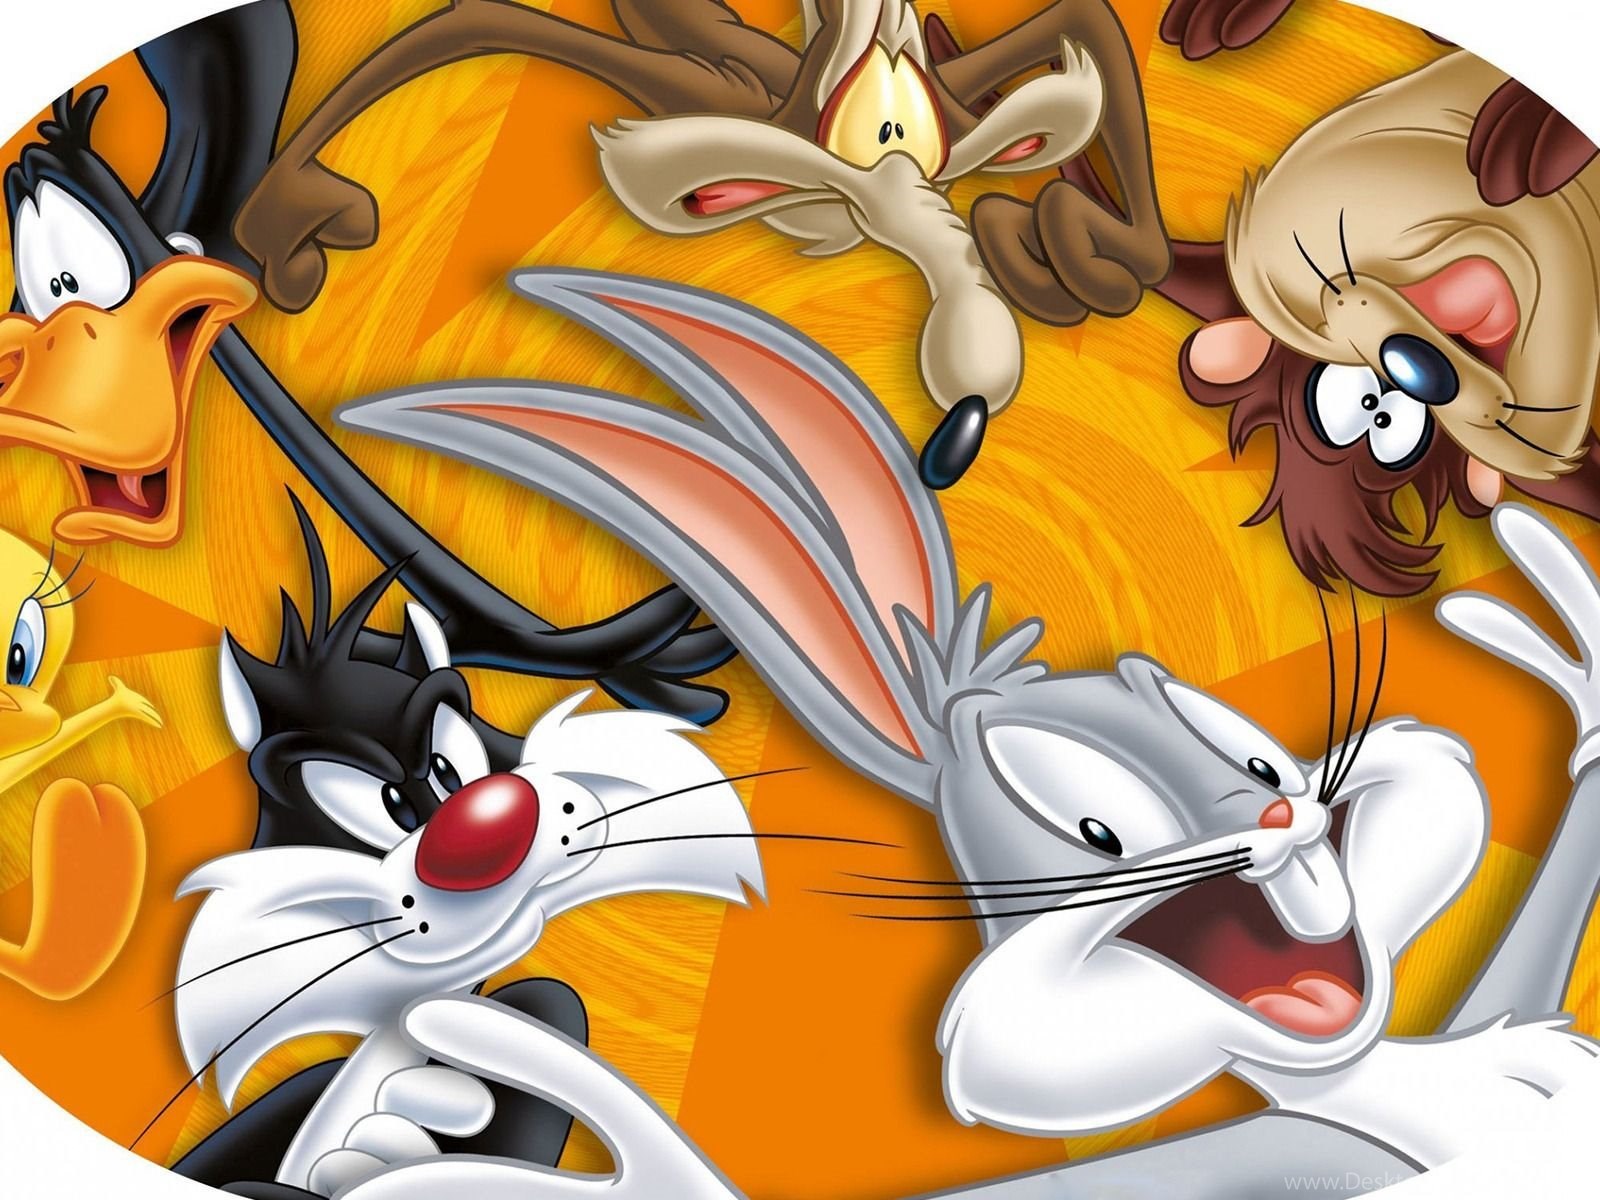 Download Looney Tunes Wallpapers Cartoon Wallpapers Fullscreen Standart 4:3...